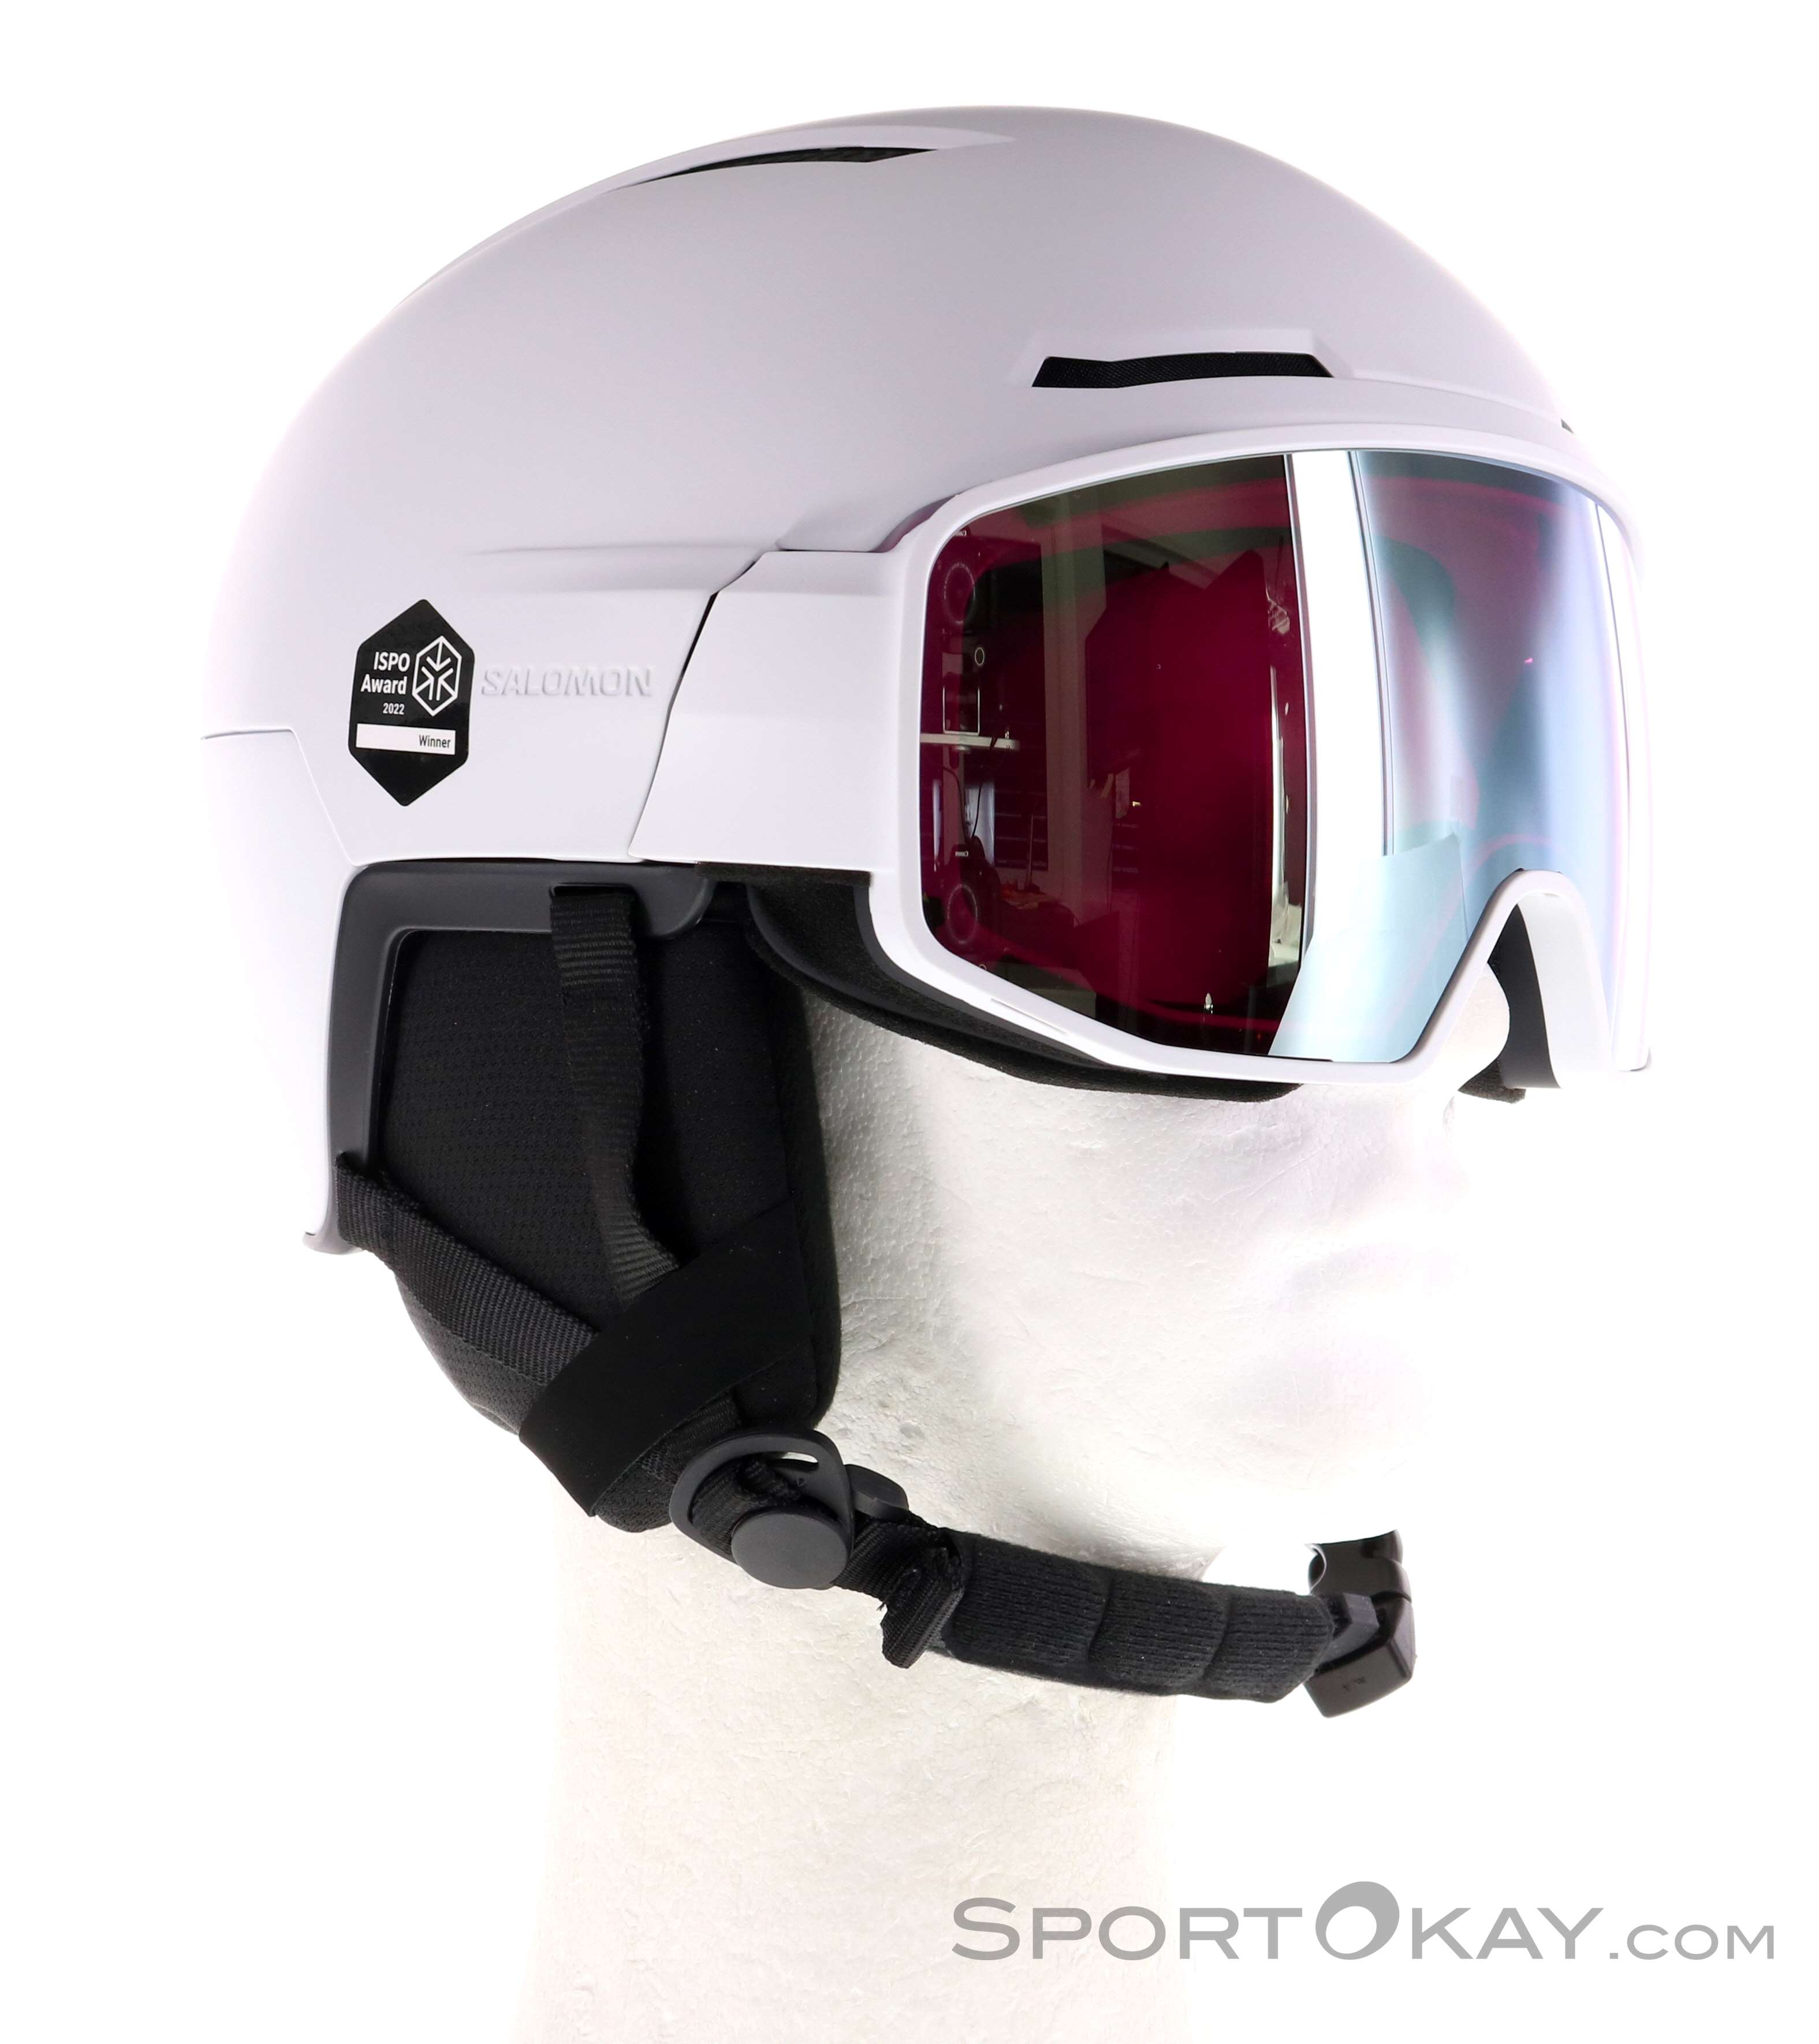 Salomon Pioneer LT Visor Photo Casque de ski - Casques de ski - Lunettes de  ski et accessoires - Ski&Freeride - Tout